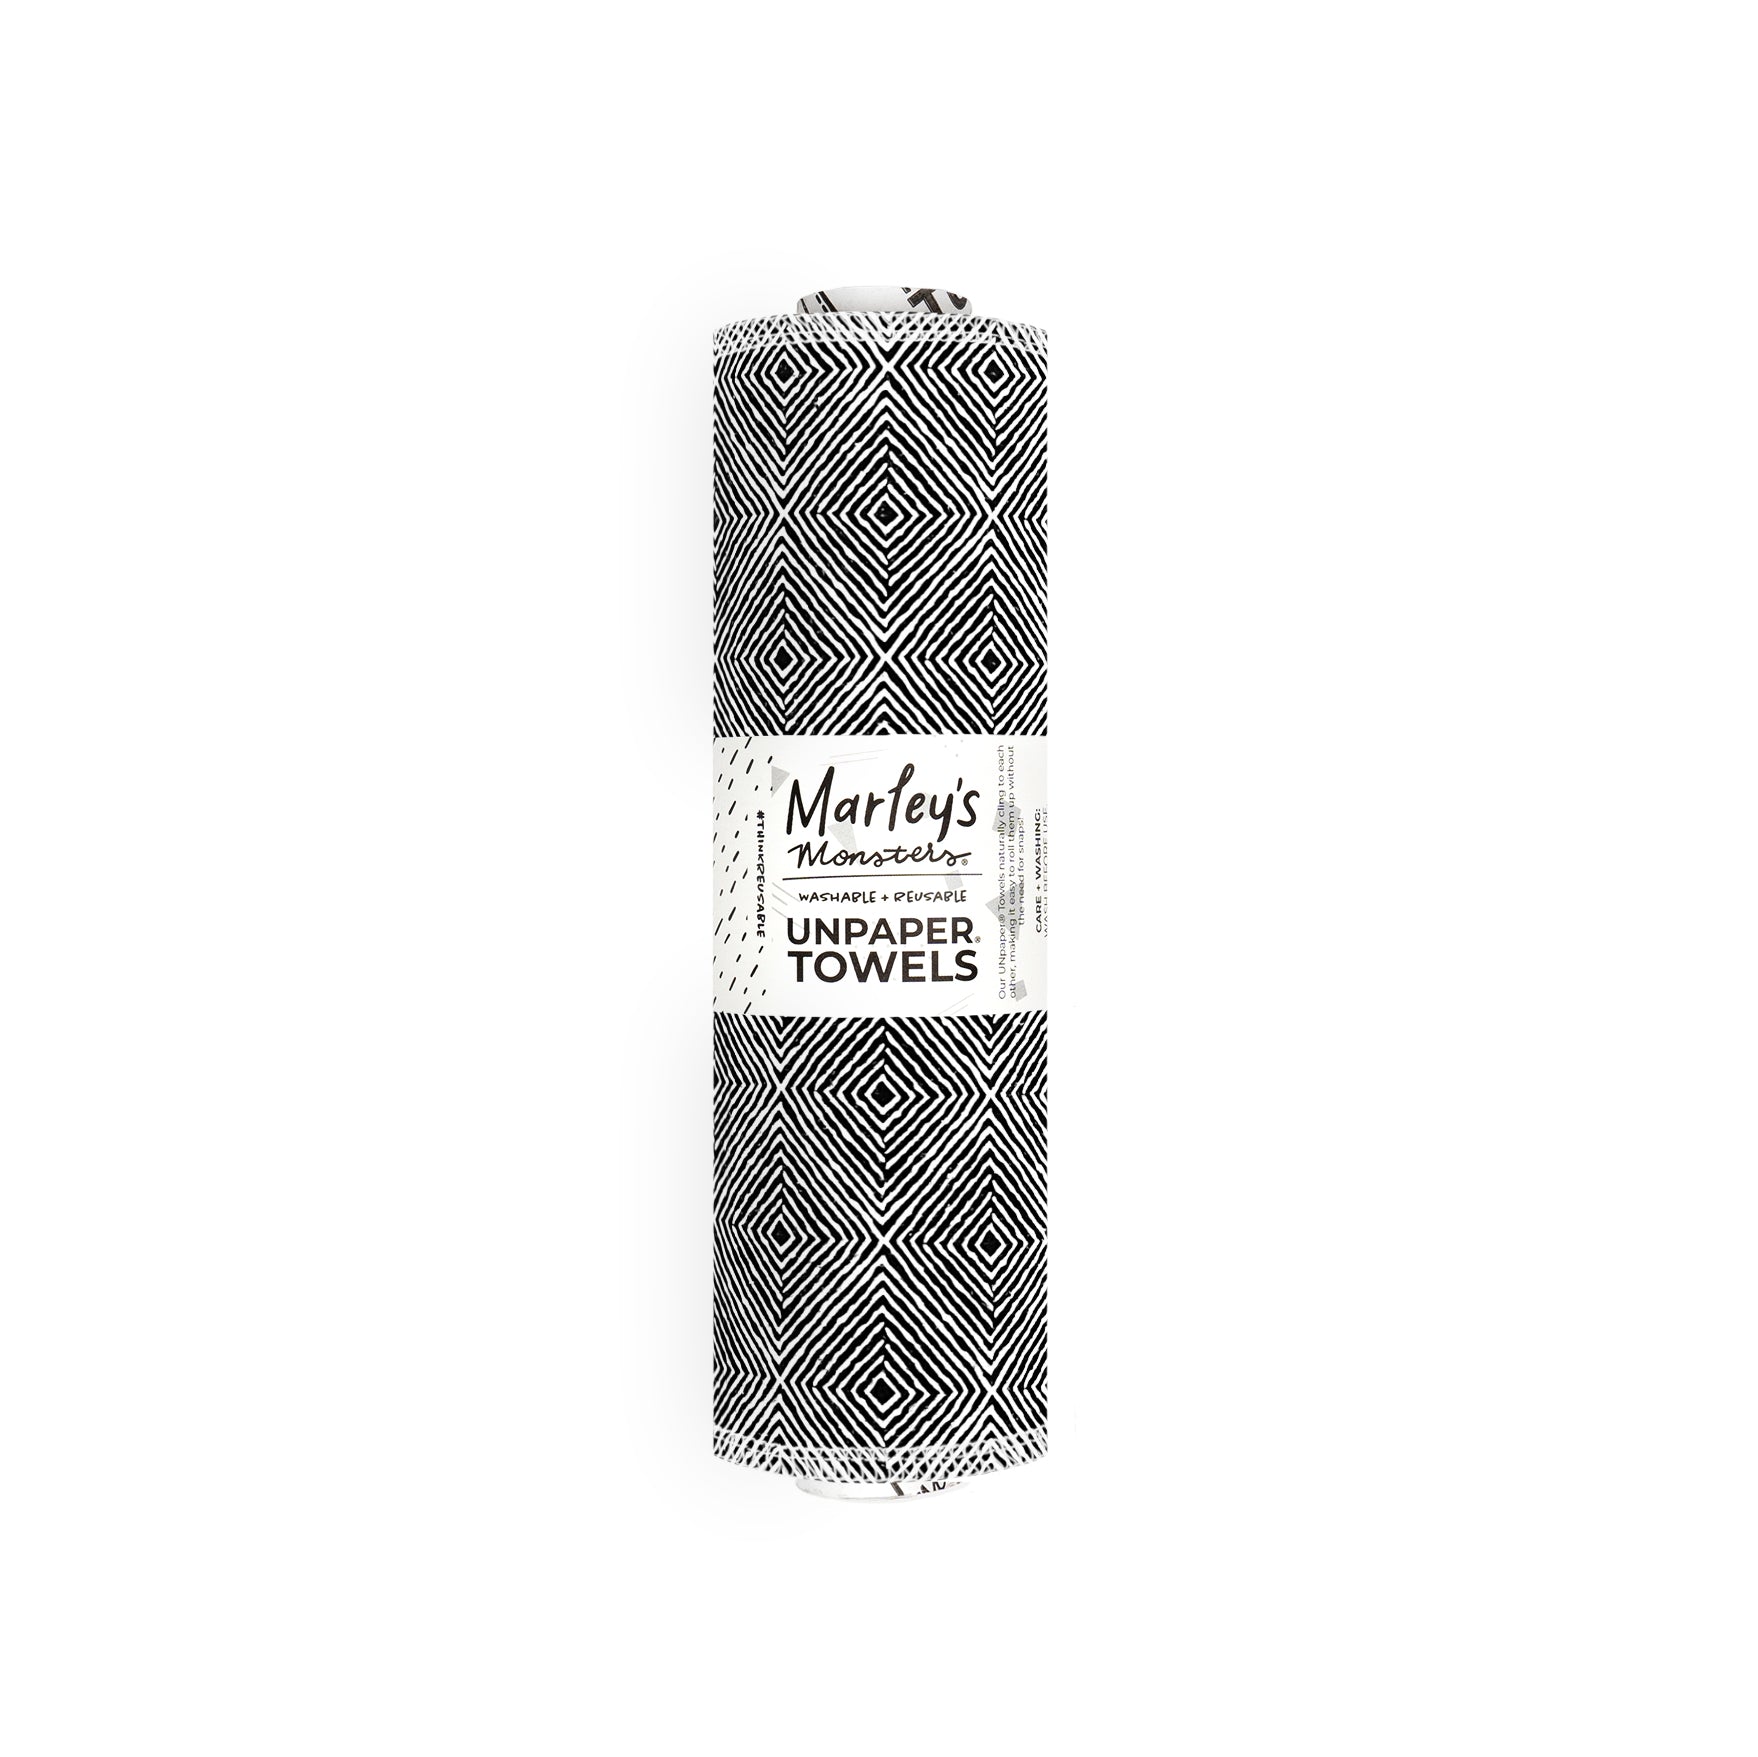 Pre-Rolled Reusable Paperless Towels - Grey dandelion - KARUILU